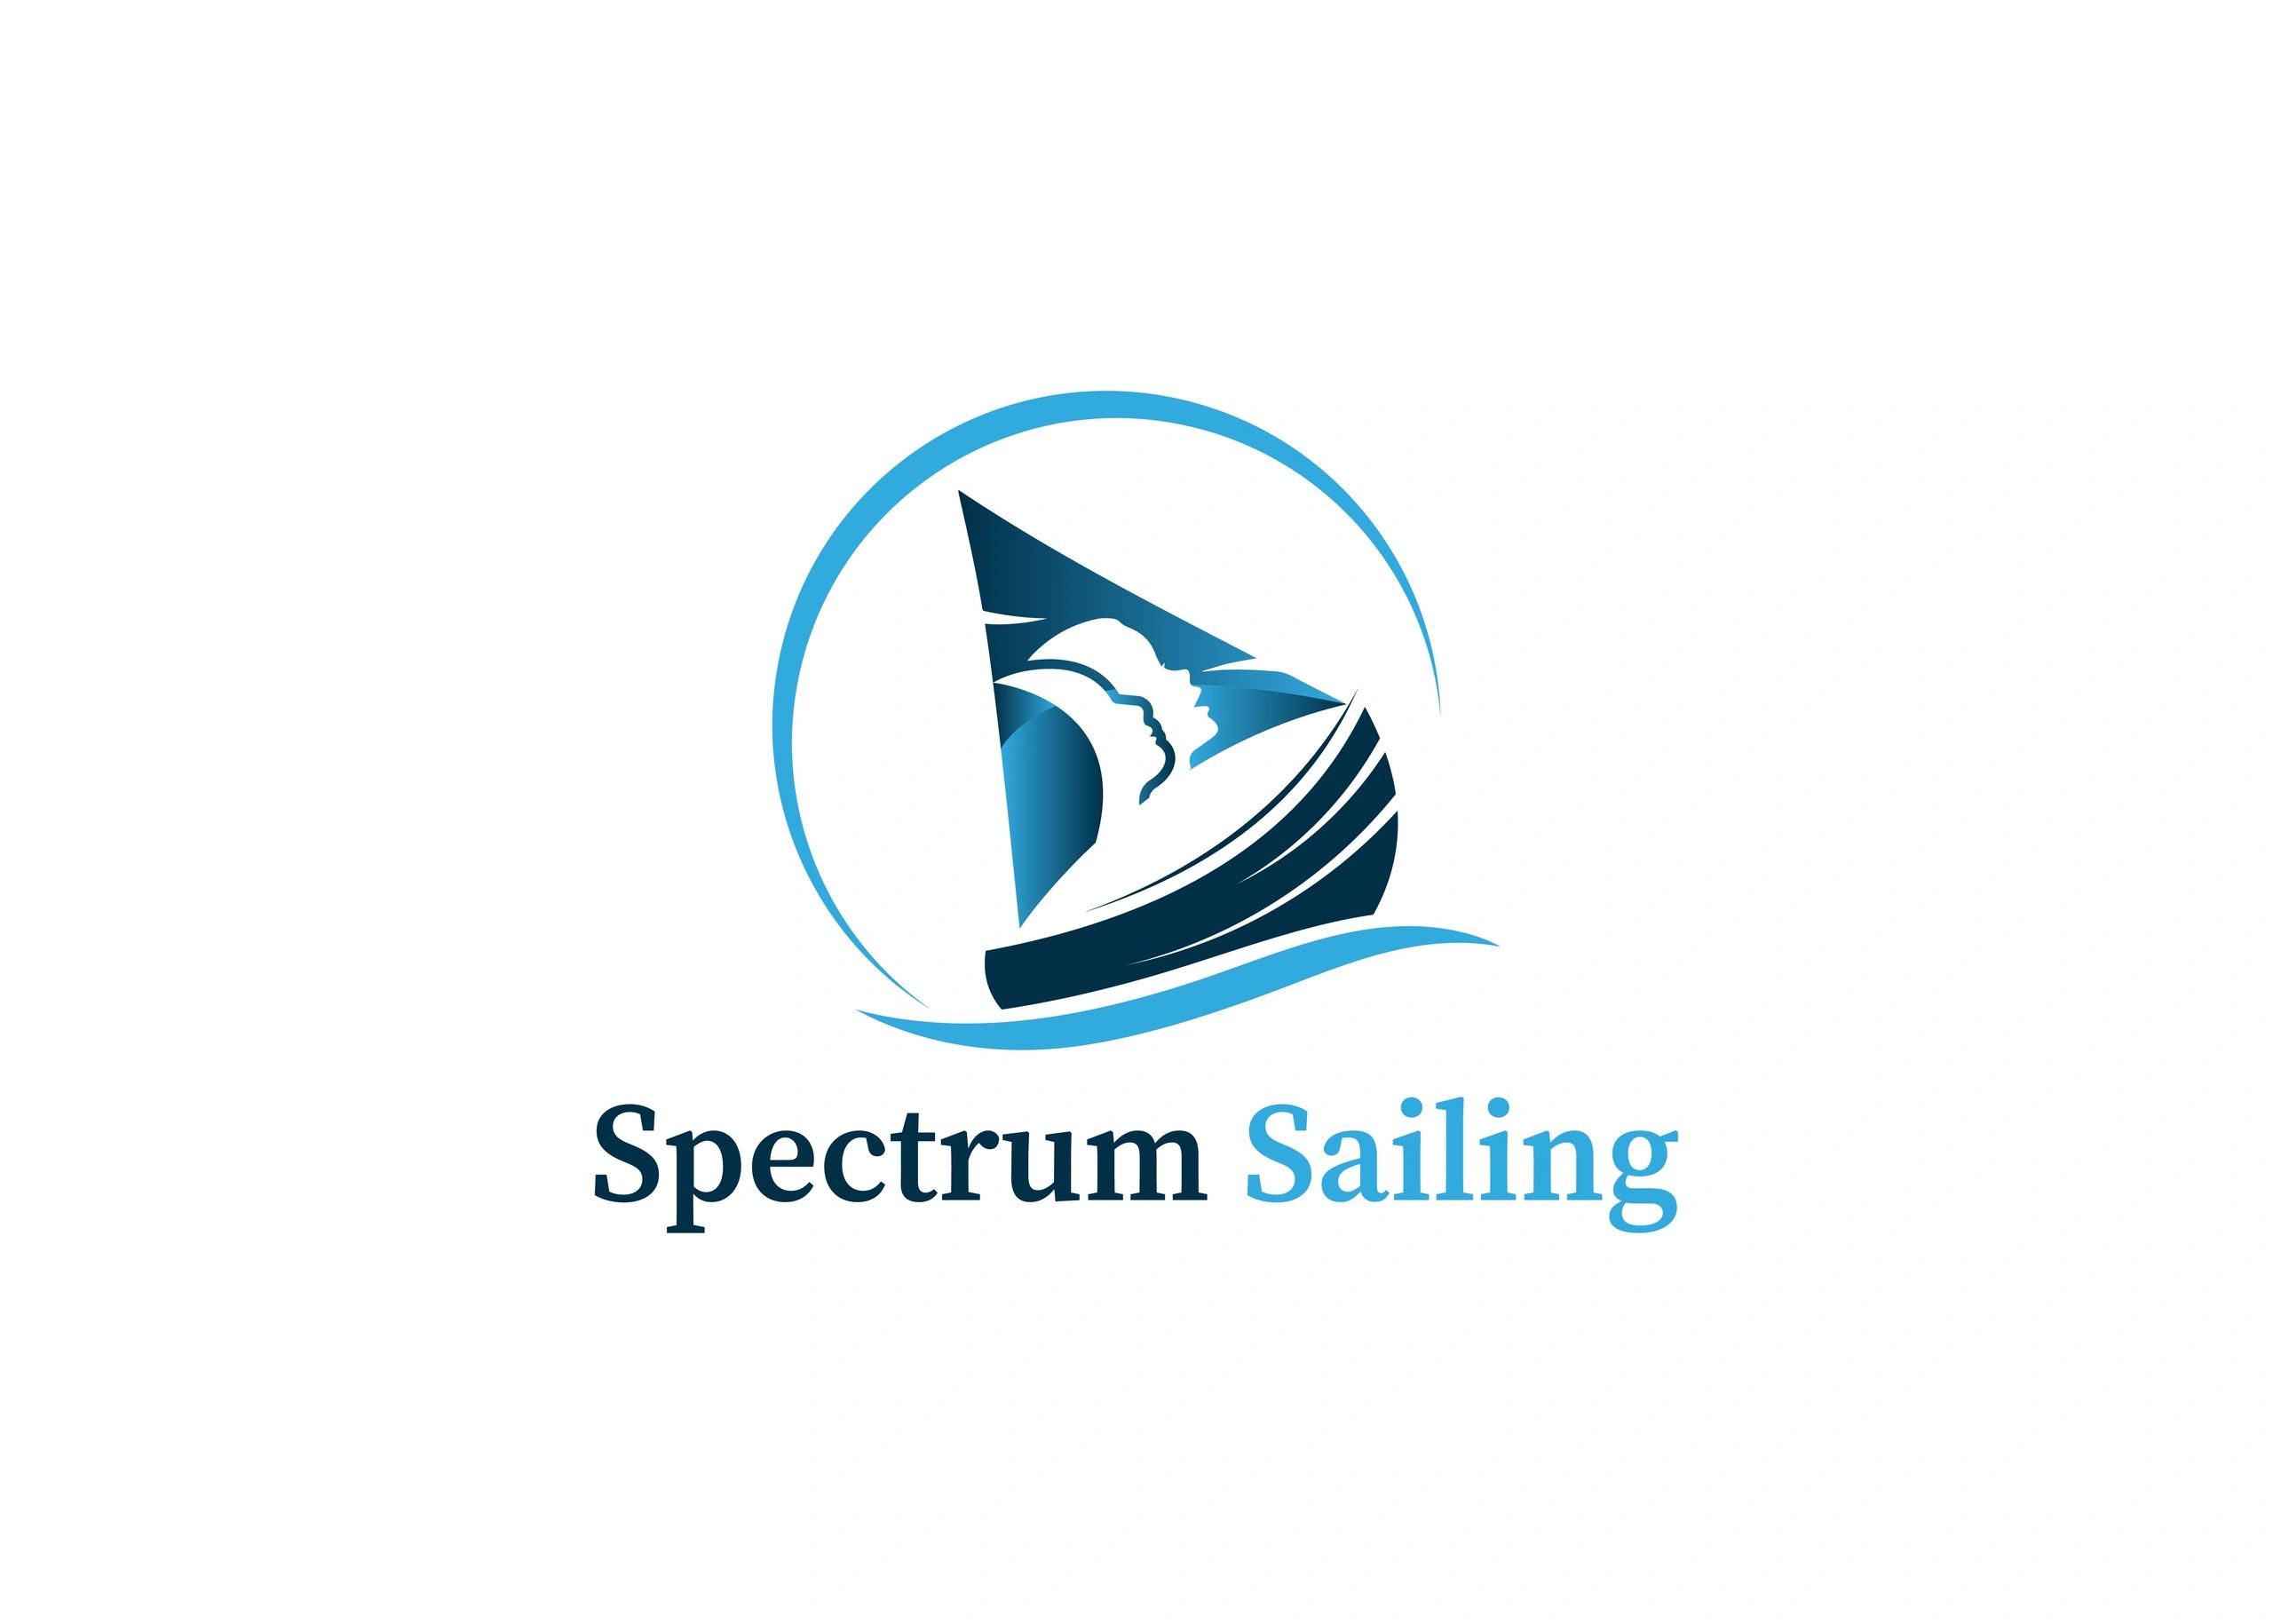 Spectrum Sailing